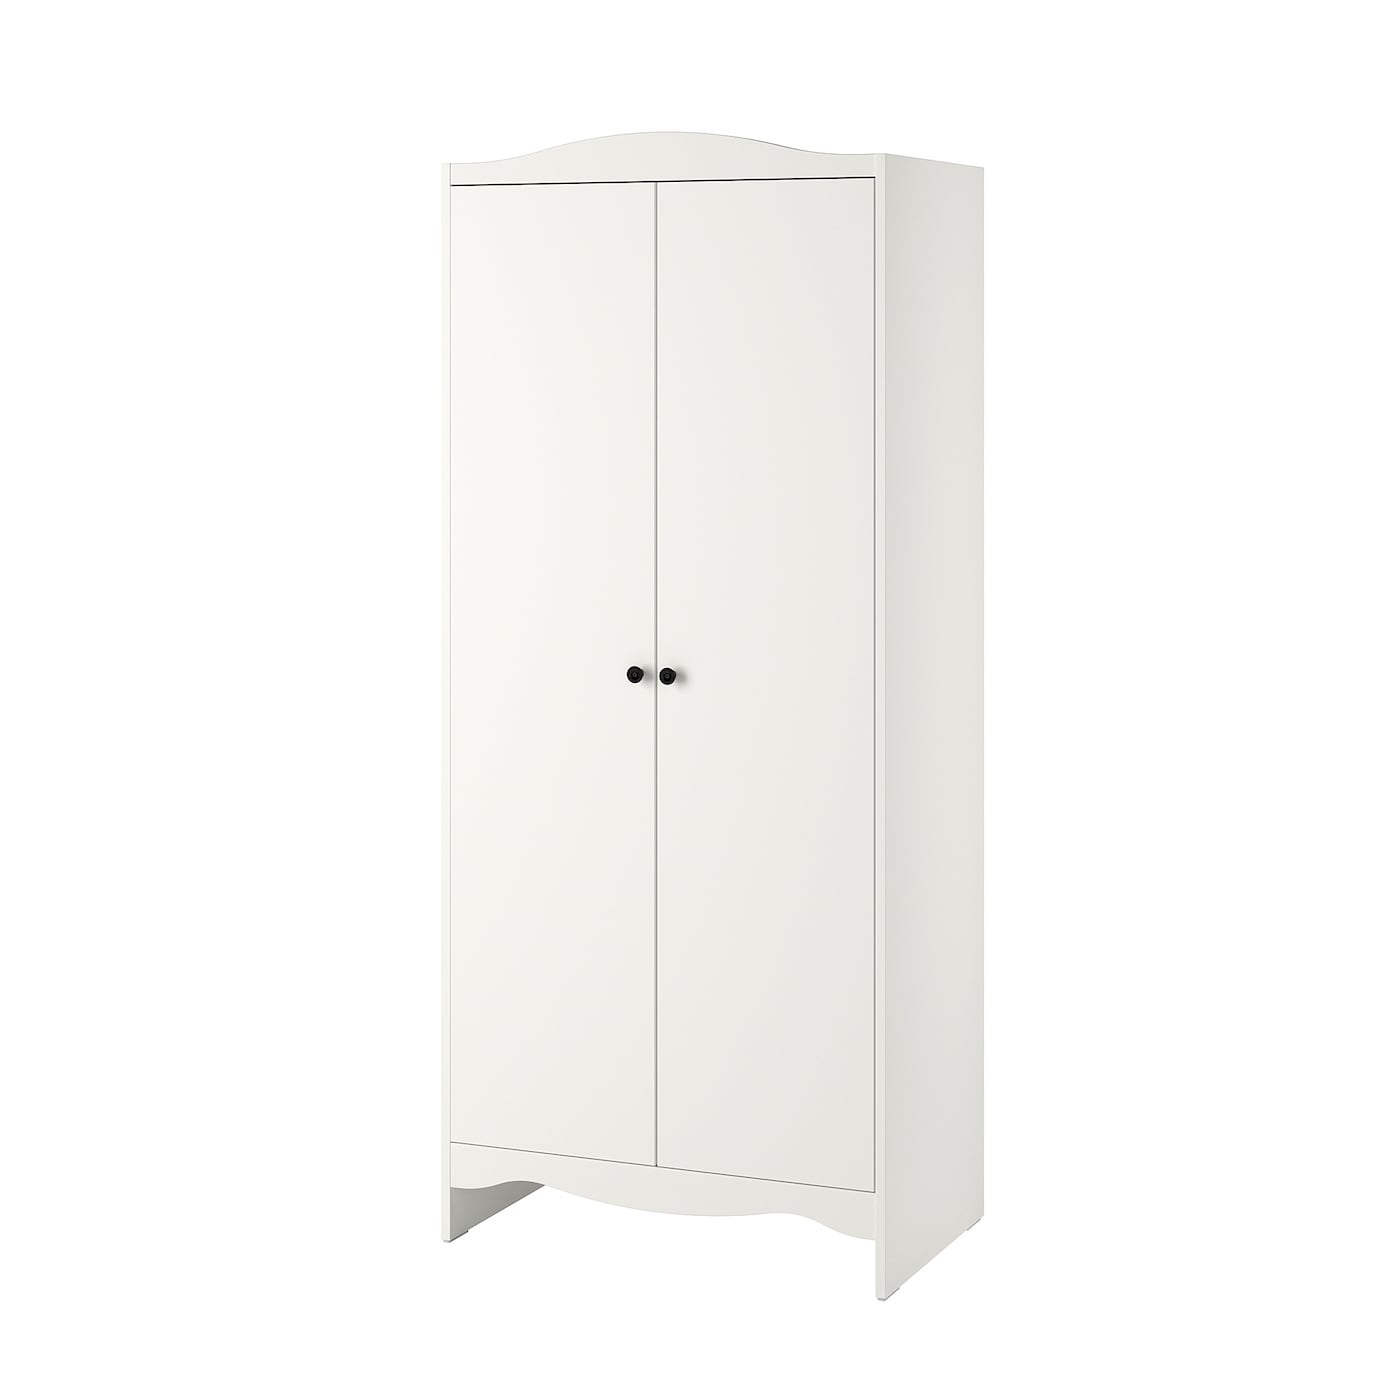 Шкаф детский - IKEA SMÅGÖRA/SMAGORA, 80x50x187 см, белый, СМОГЁРА ИКЕА